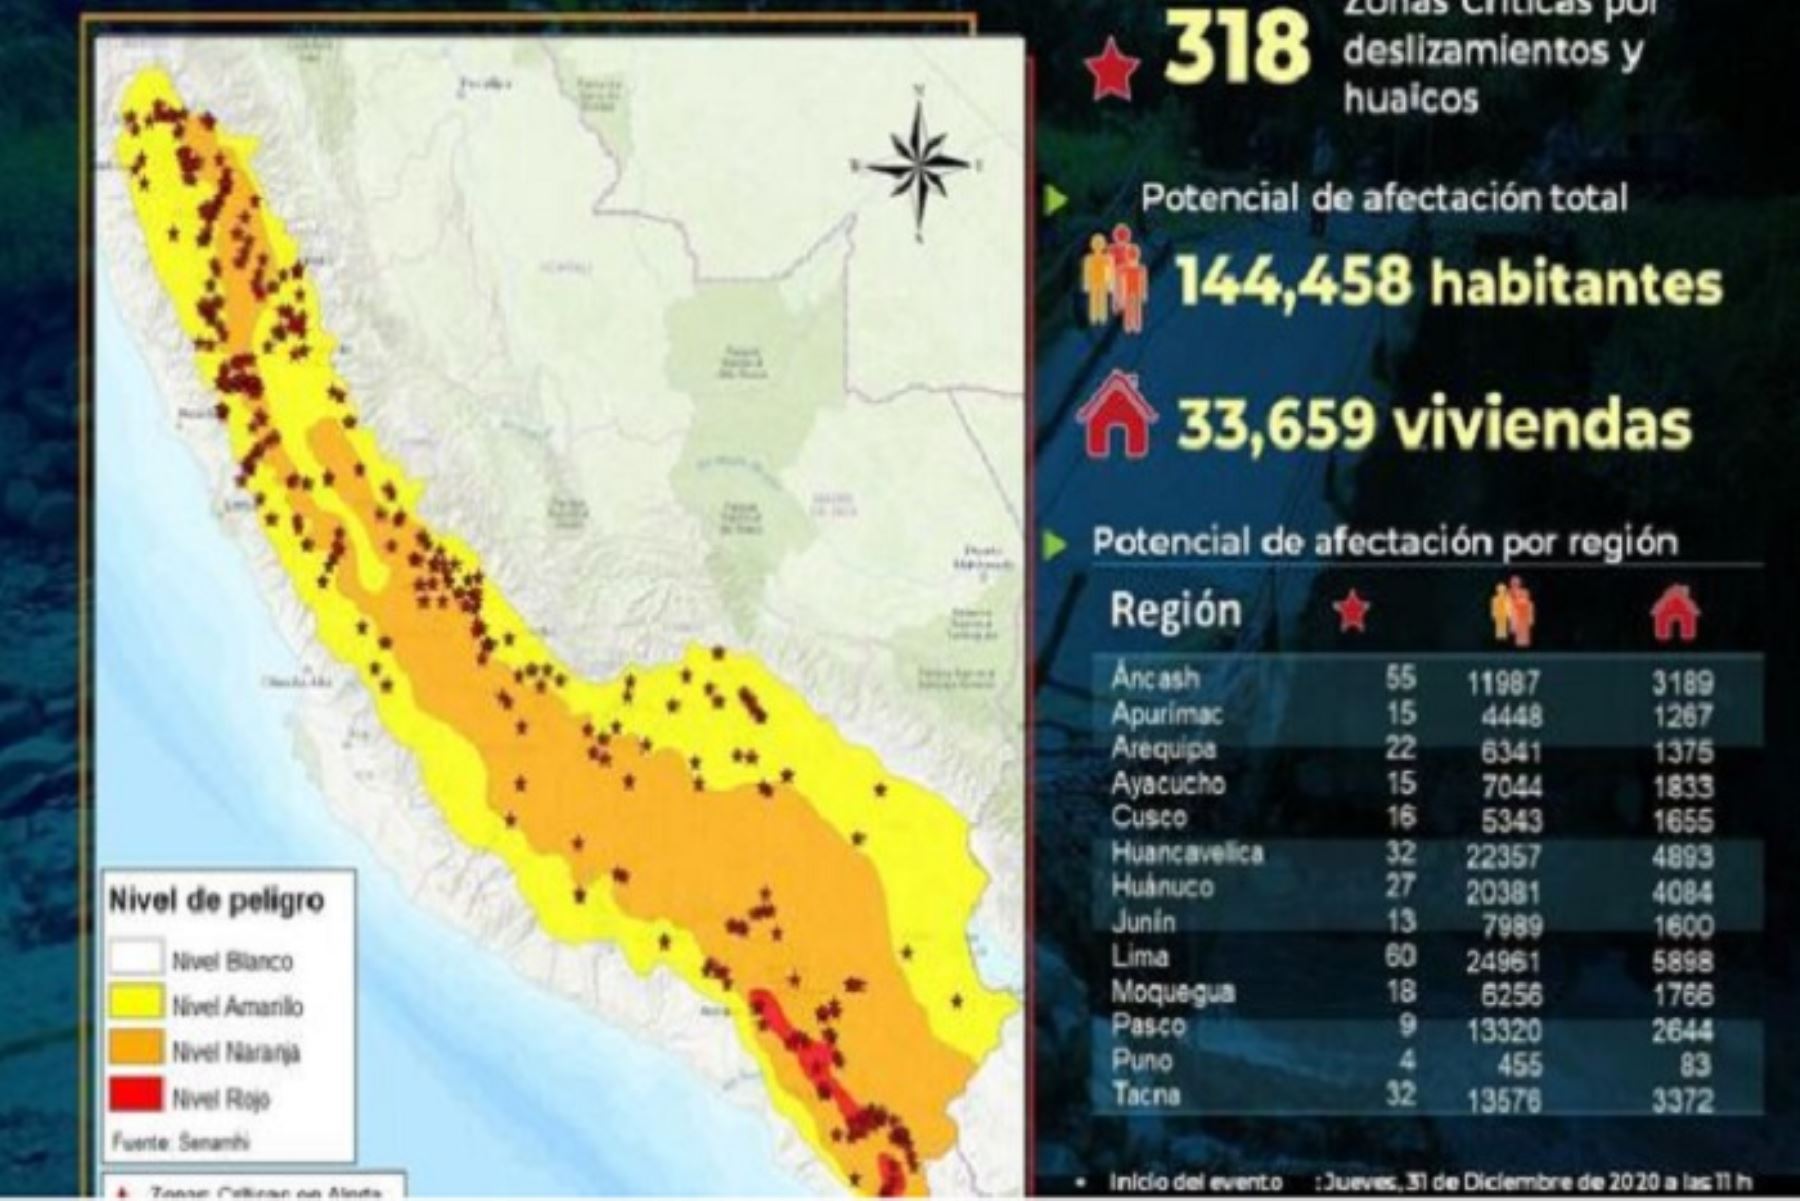 Las regiones involucradas en la alerta son Áncash (55), Apurímac (15), Arequipa (22), Ayacucho (15), Cusco (16), Huancavelica (32), Huánuco (27), Junín (13), Lima (60), Moquegua (18), Pasco (9), Puno (4) y Tacna (32).